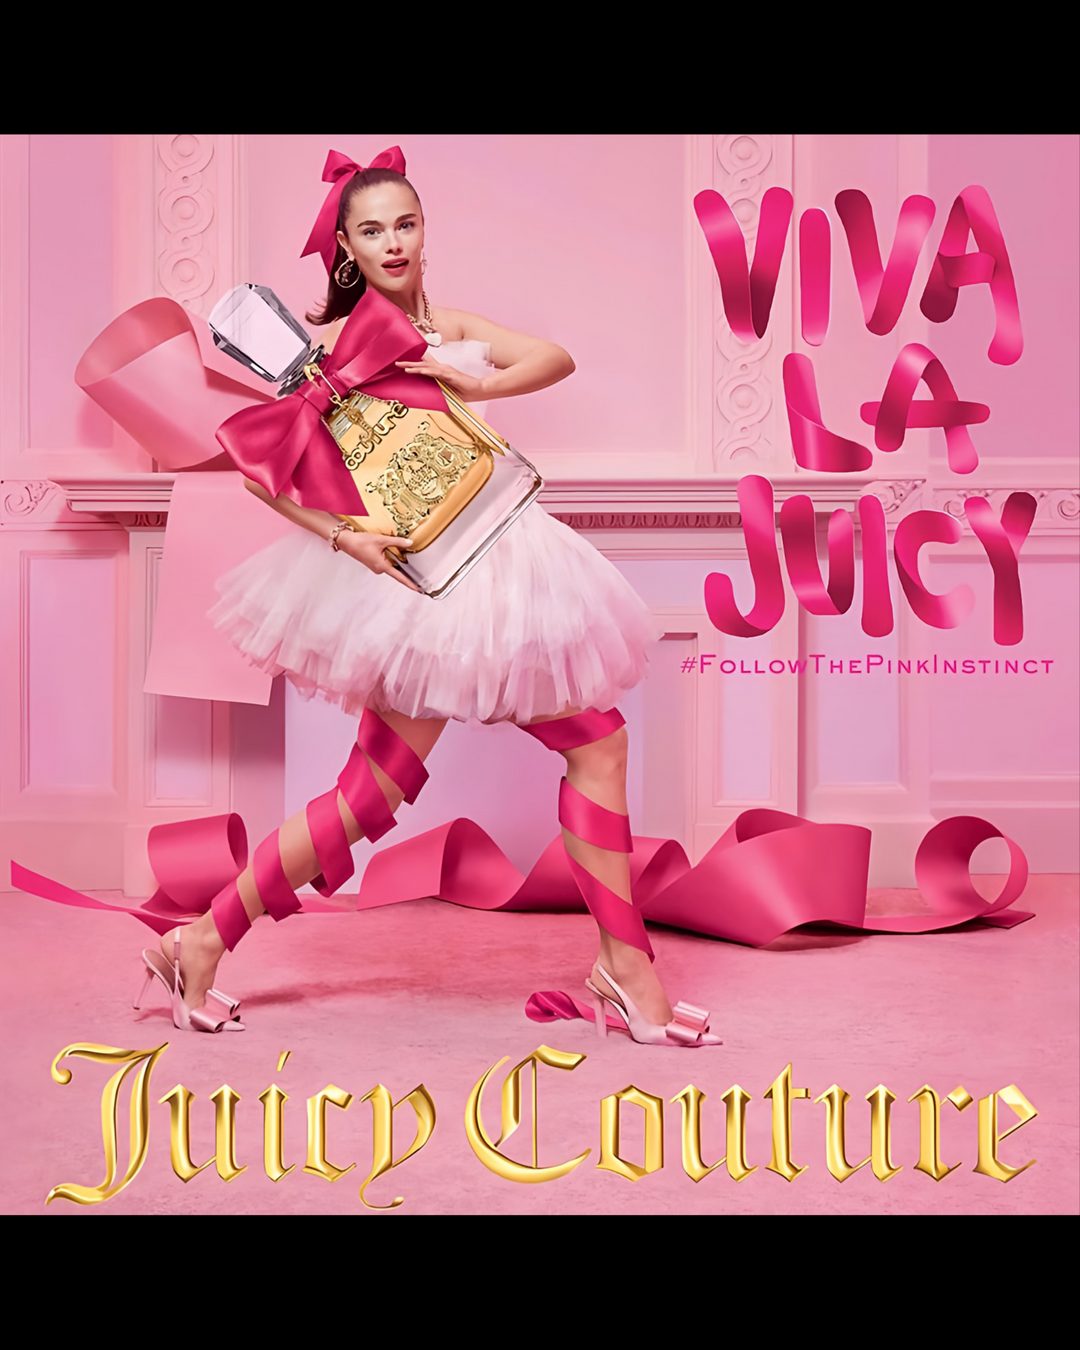 Viva La Juicy ‘Juicy Couture’